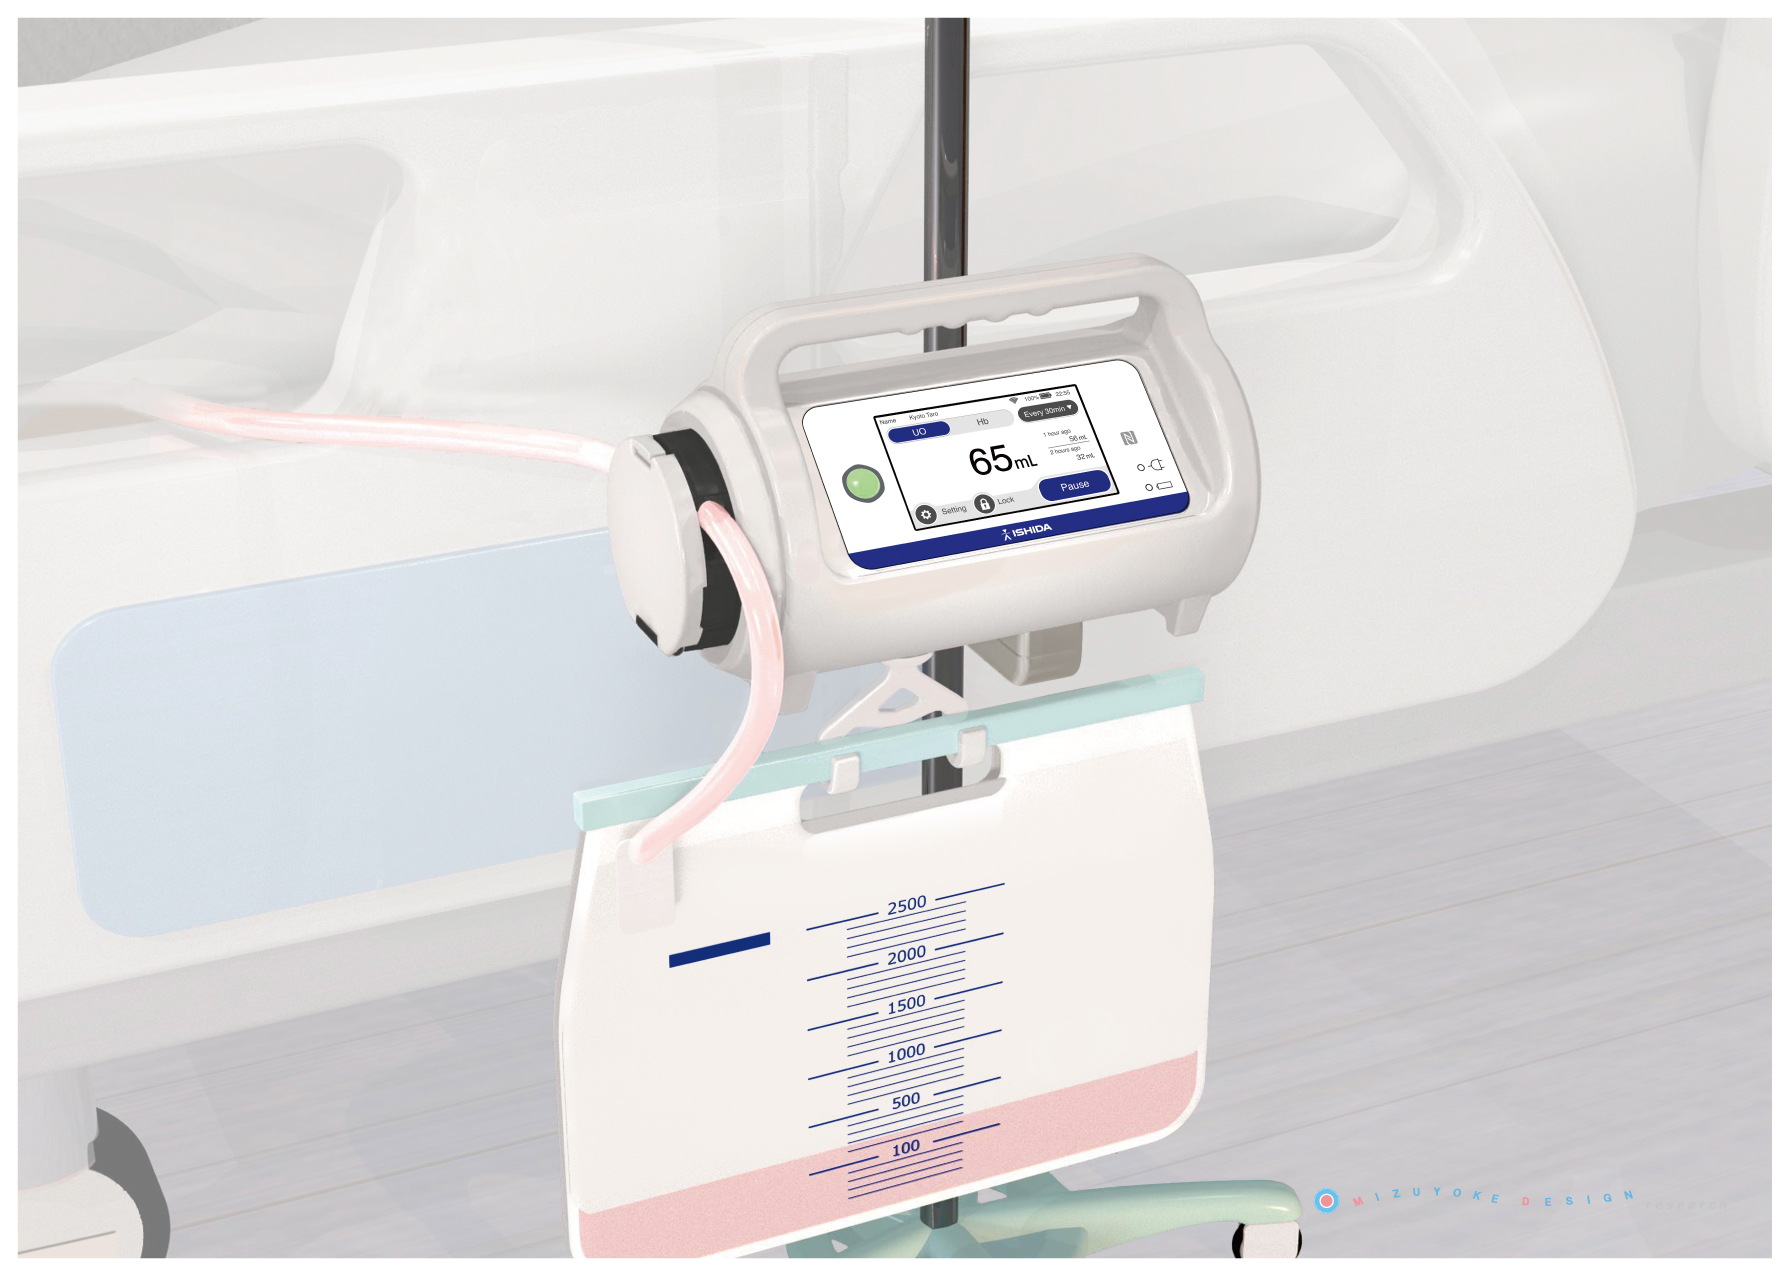 入院患者様向けの尿量計測システムです。尿中質量・ヘモグロビン値を自動測定する医療機器となります。